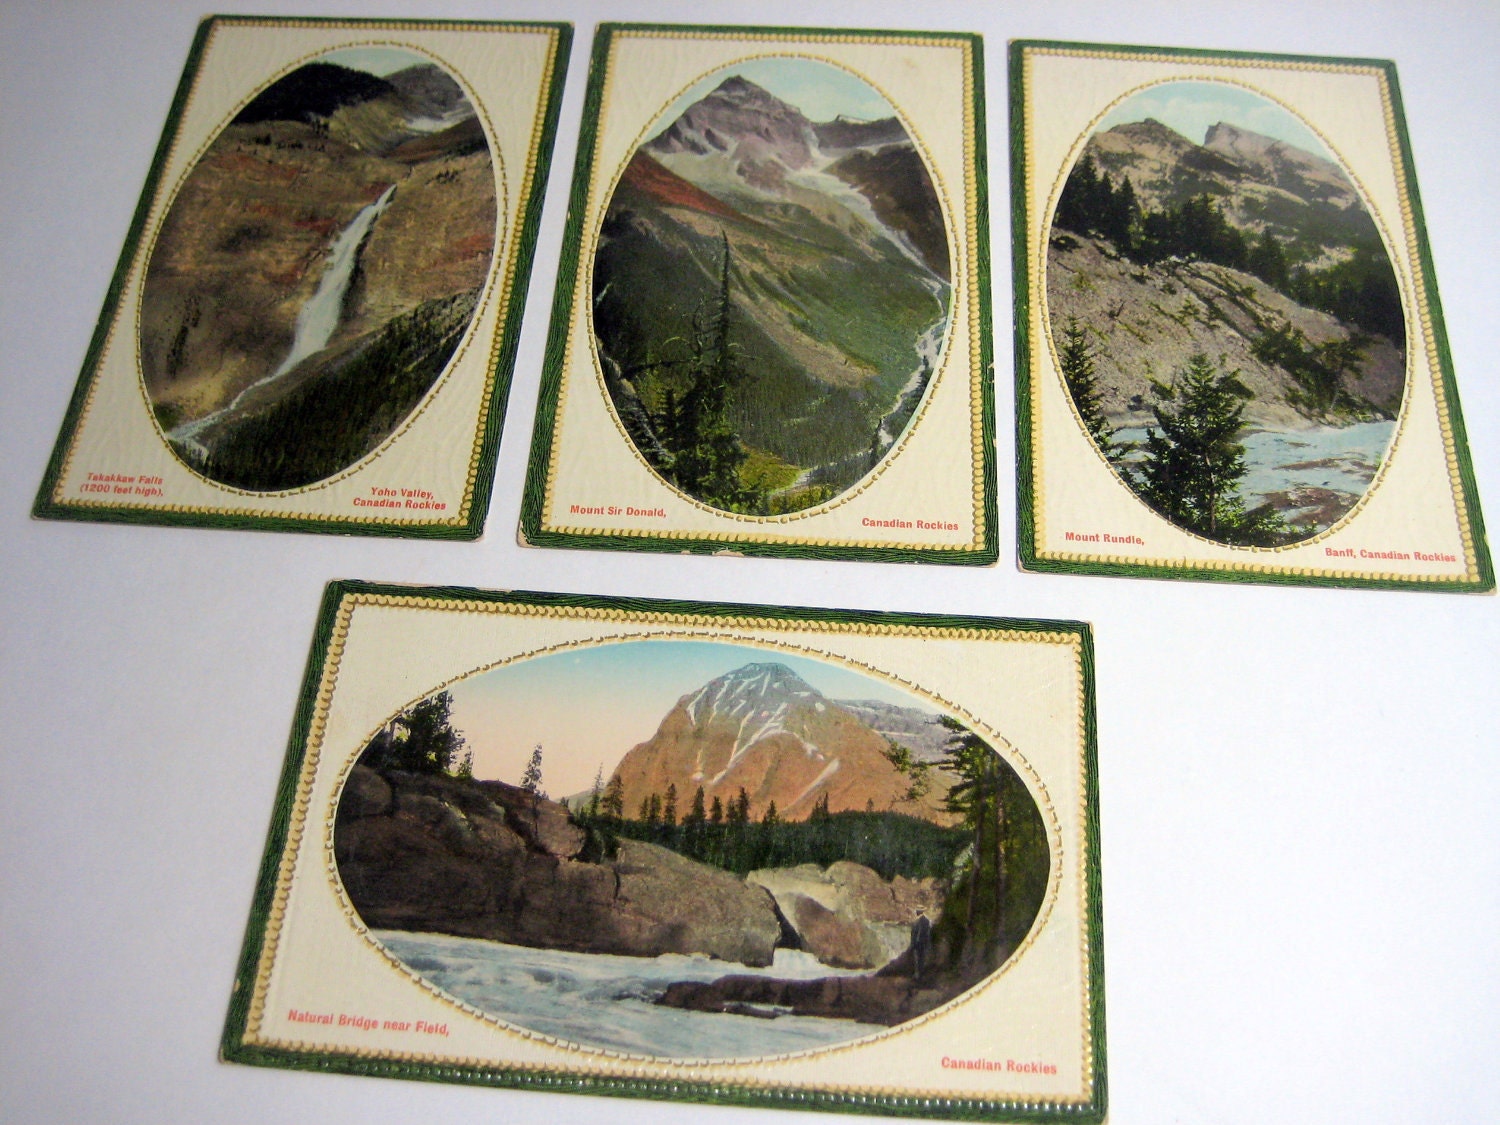 Vintage+canadian+postcards